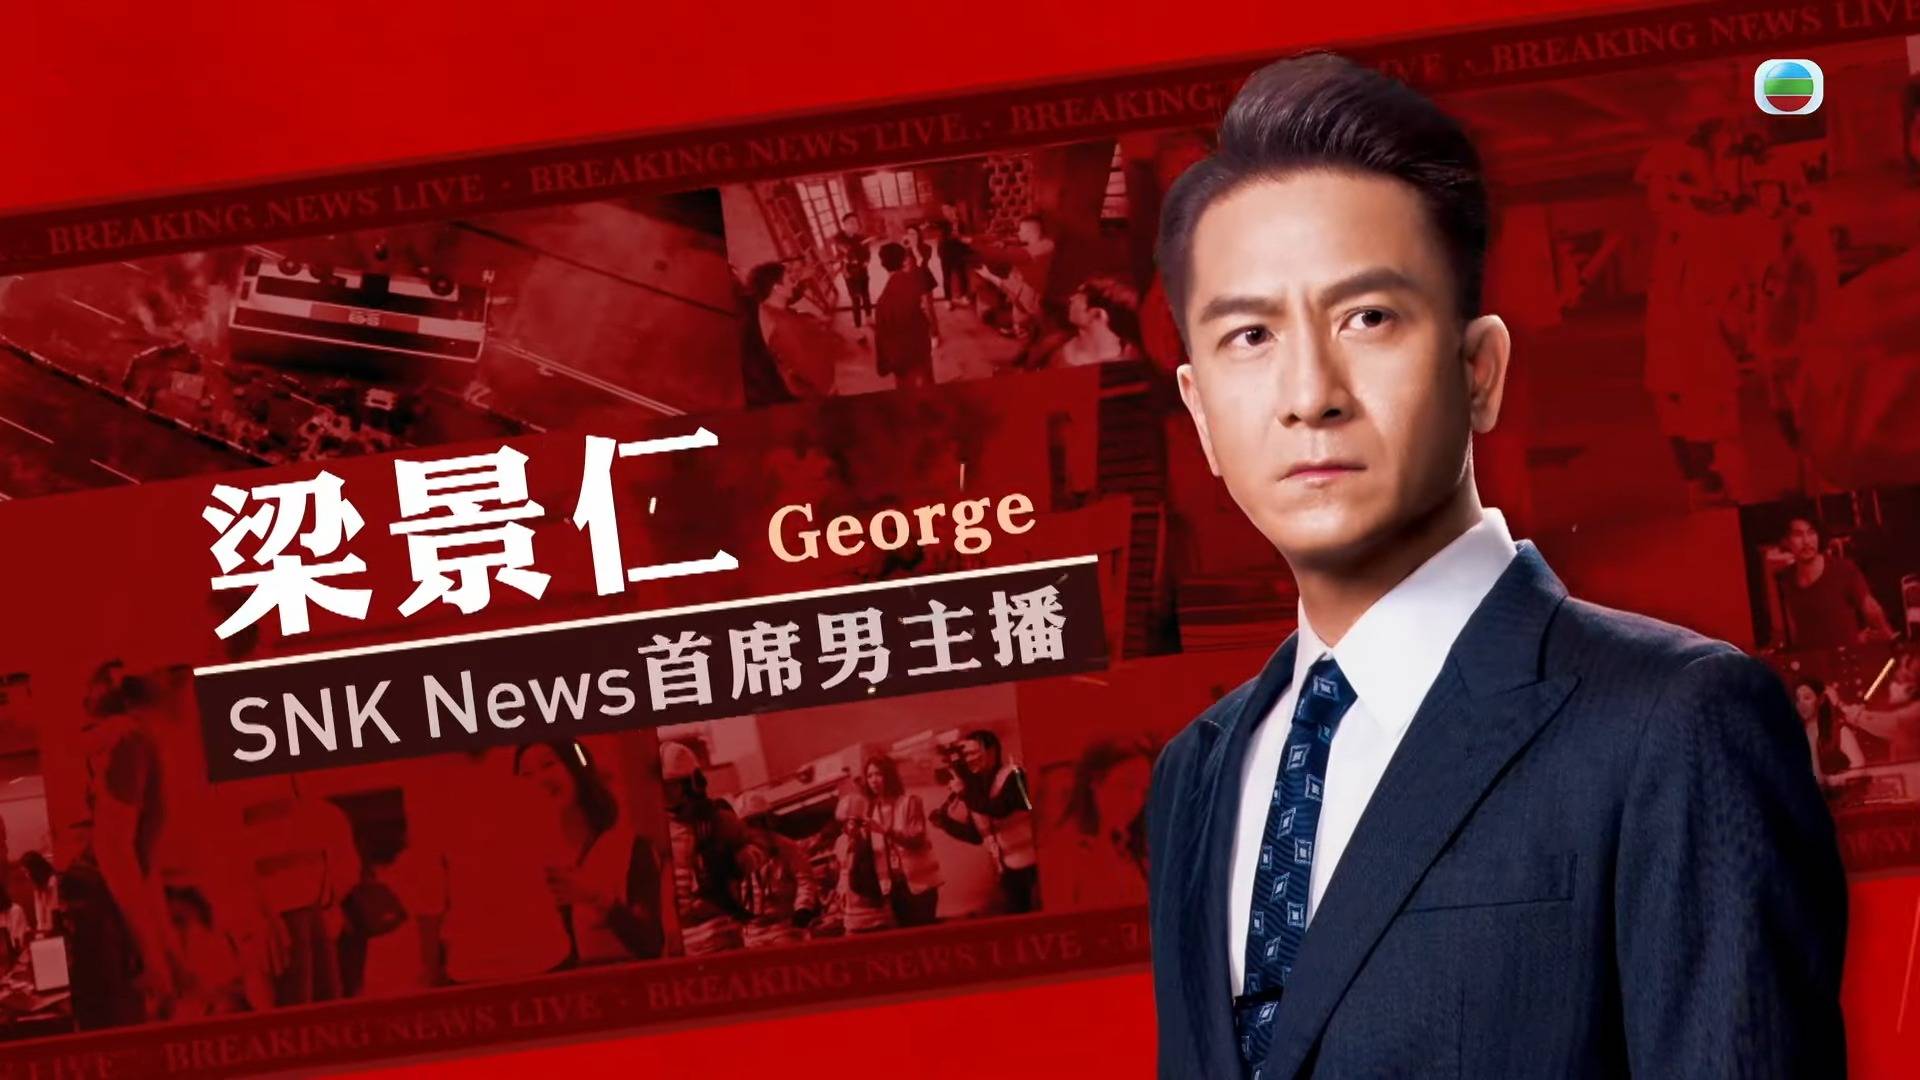 新闻女王 马国明饰演「SNK News 首席男主播」梁景仁George）。